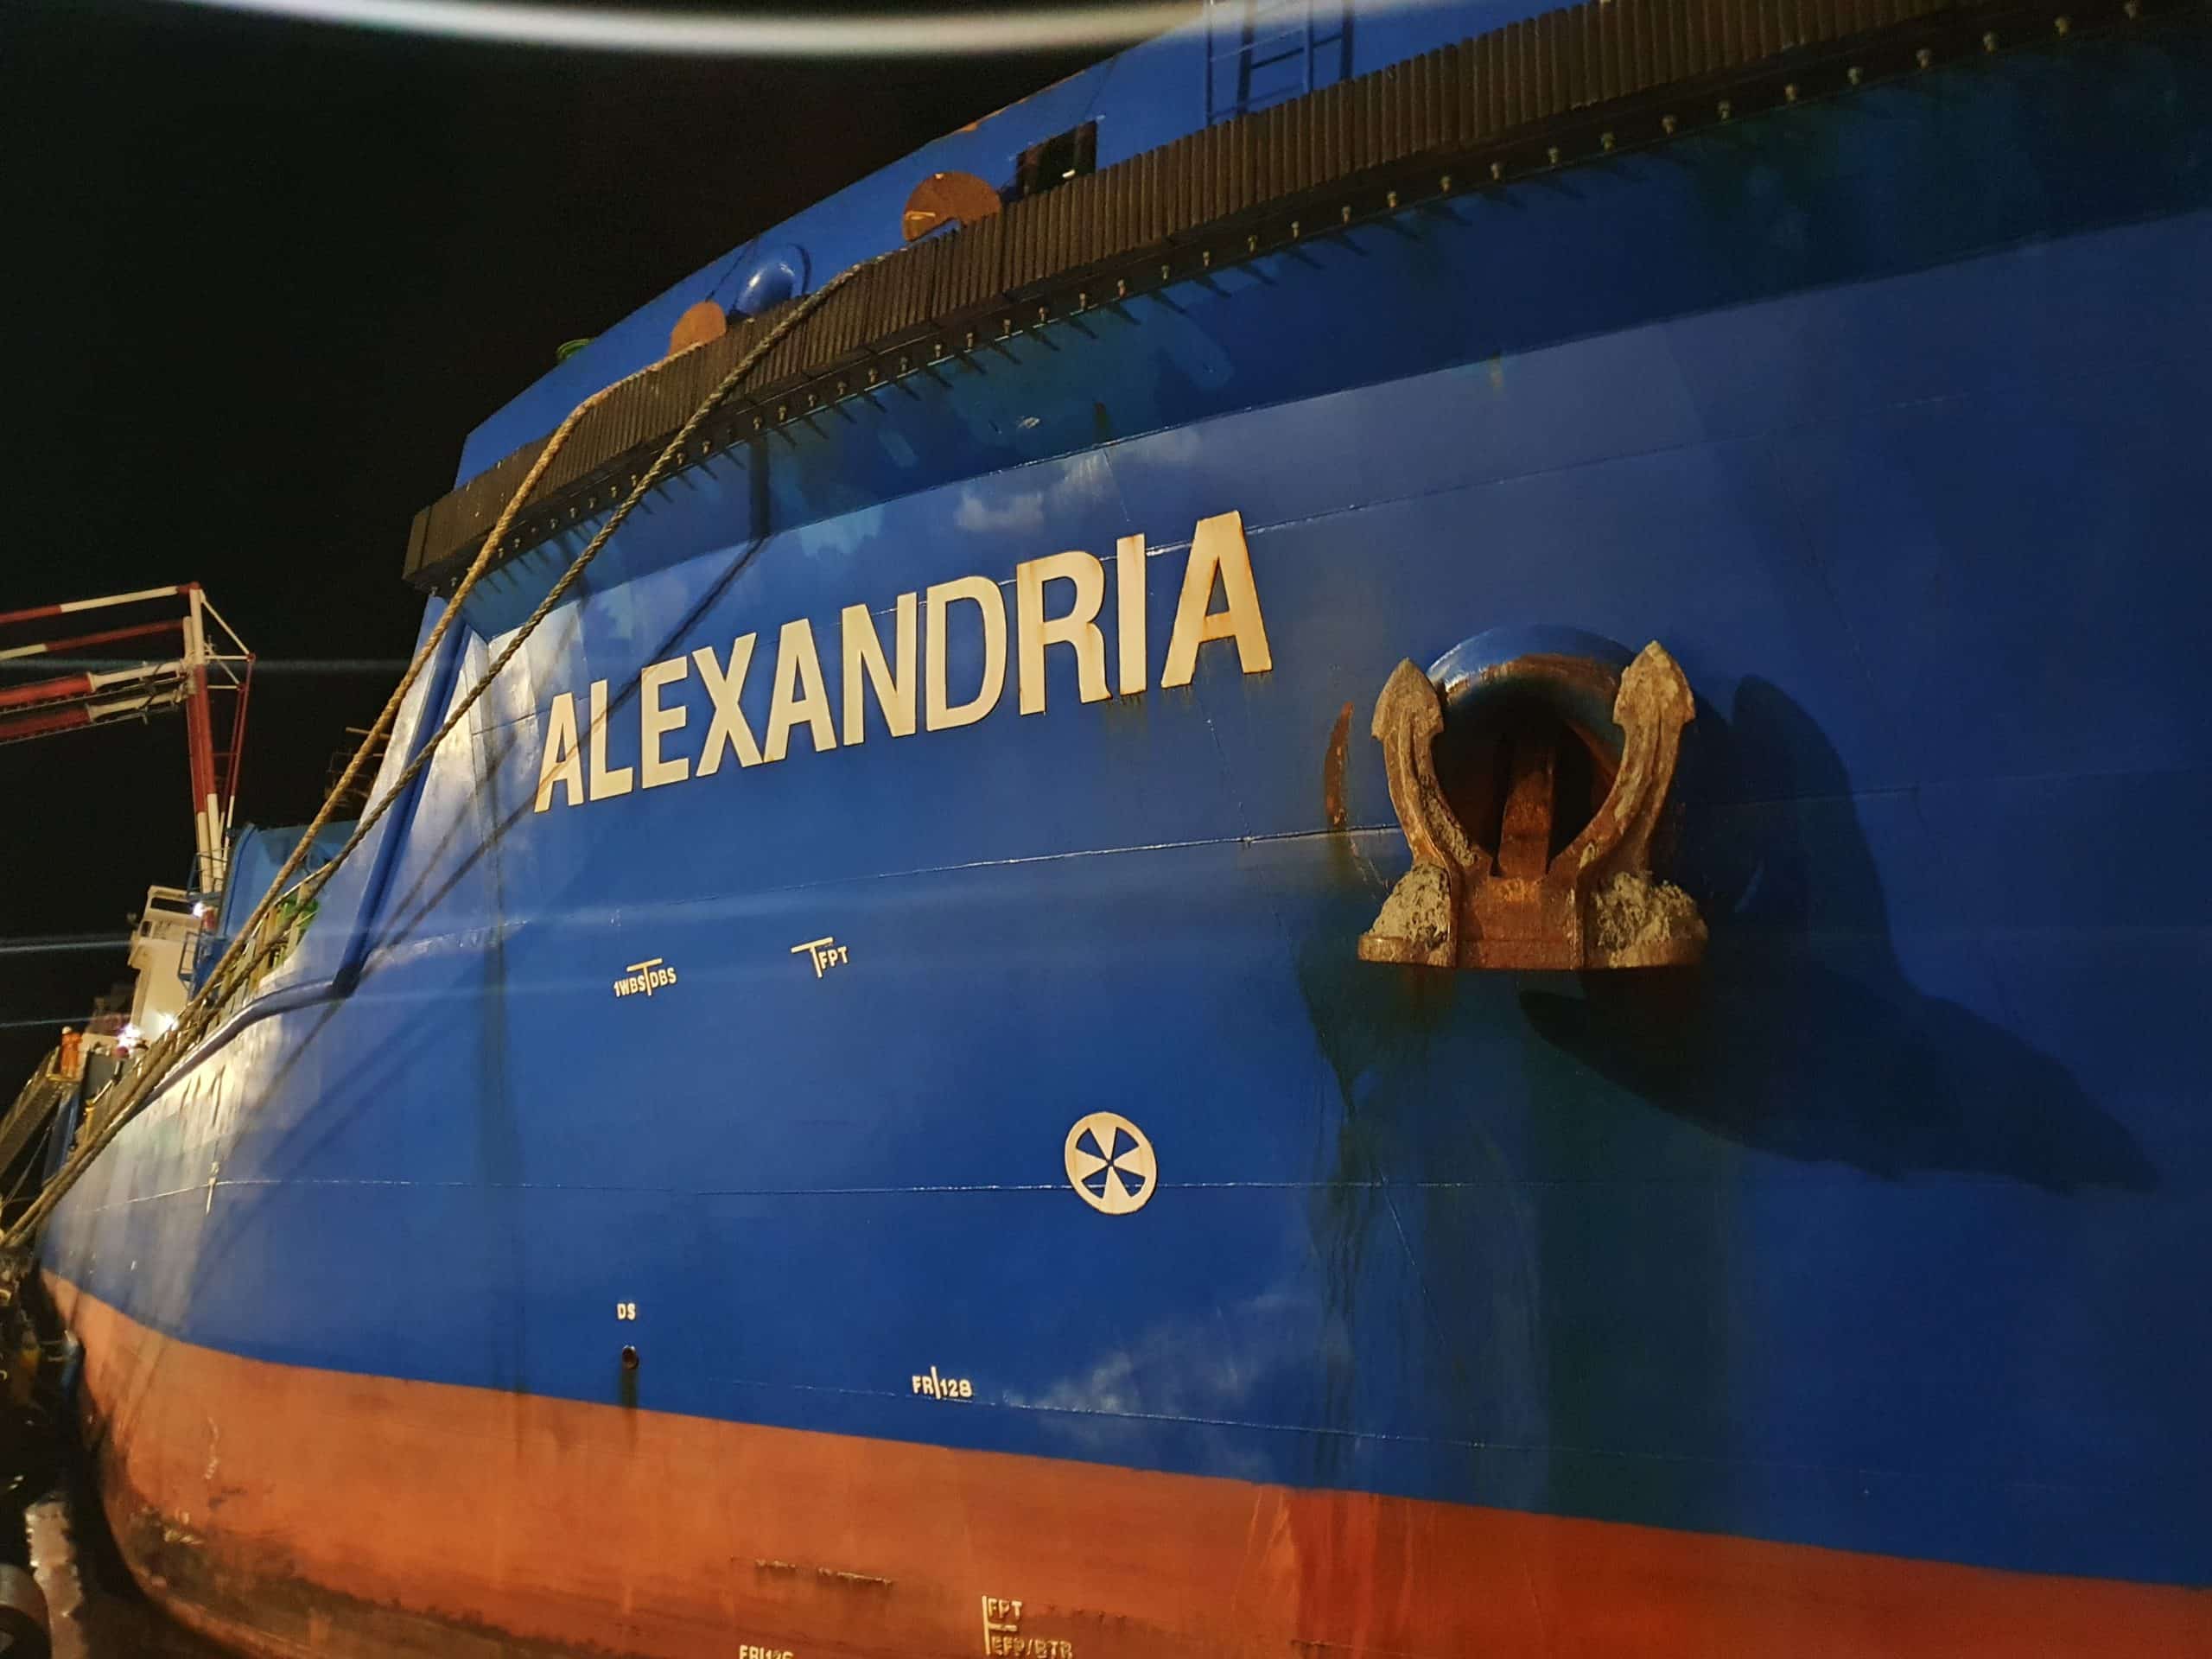 אונית ALEXANDRIA. צילום התחנה הצפונית יחידה ארצית להגנת הסביבה הימית המשרד להגנת הסביבה 1 scaled